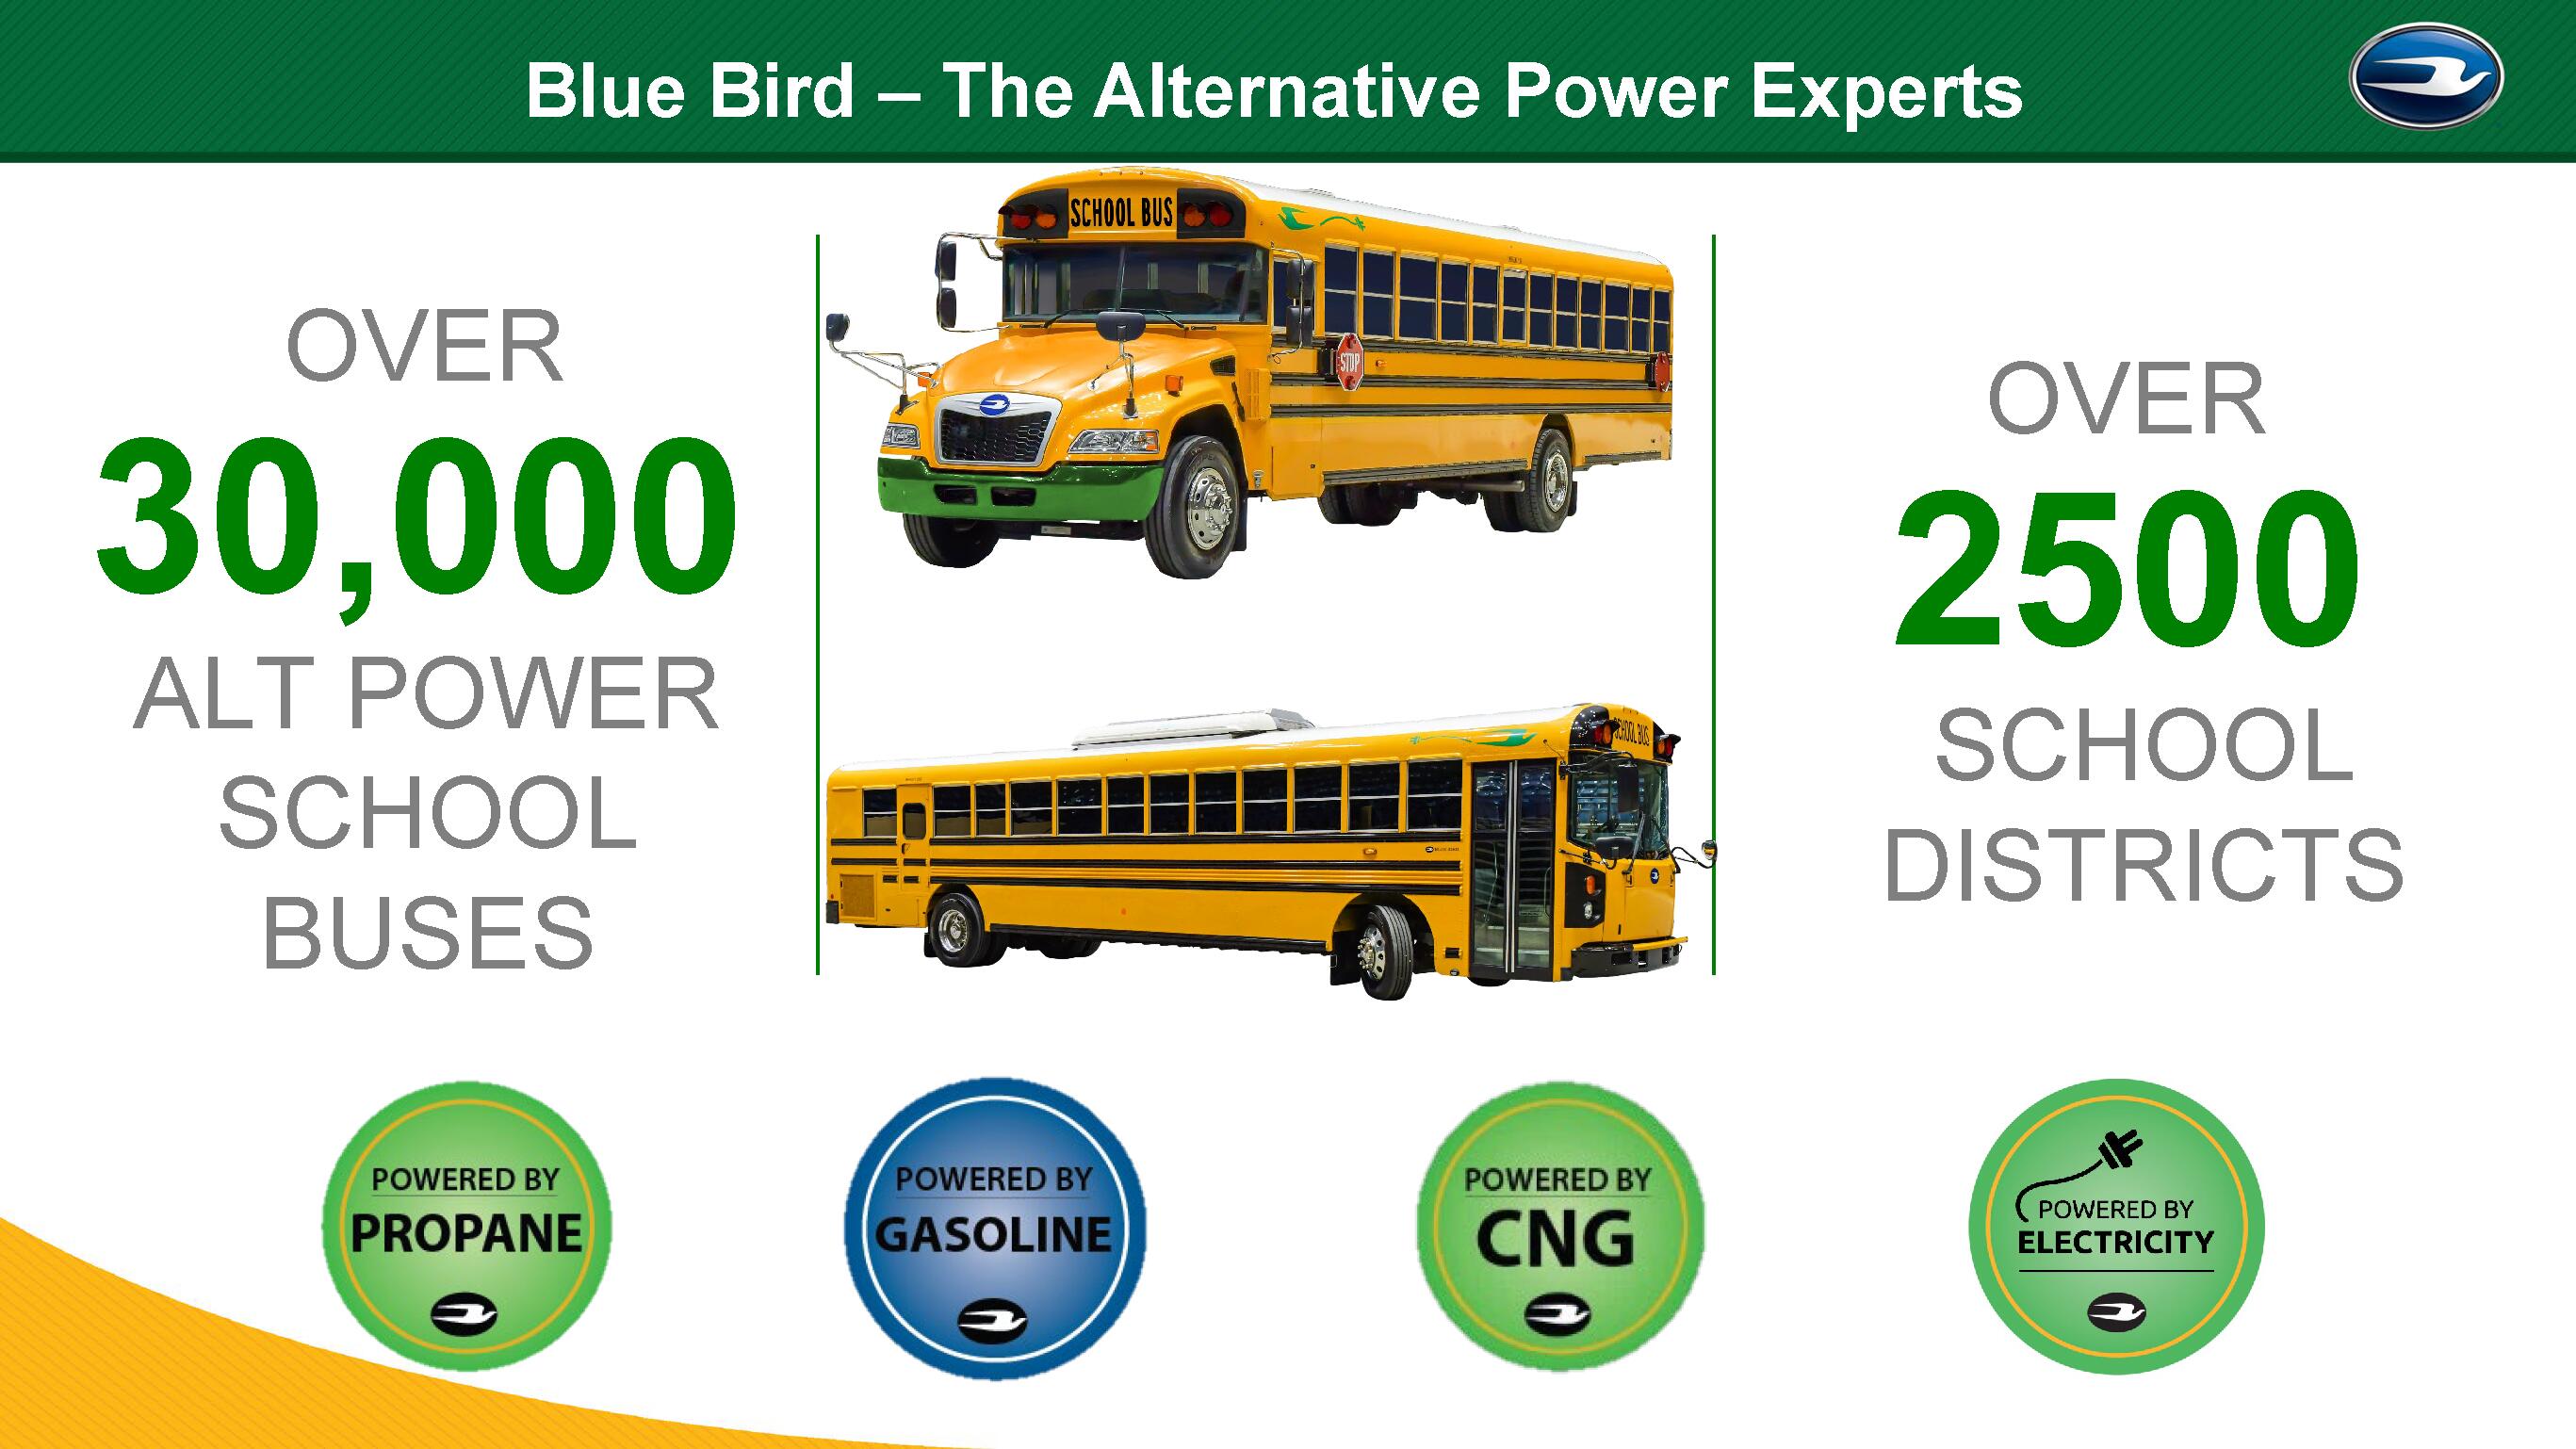 Blue Bird Offers Alternative Power